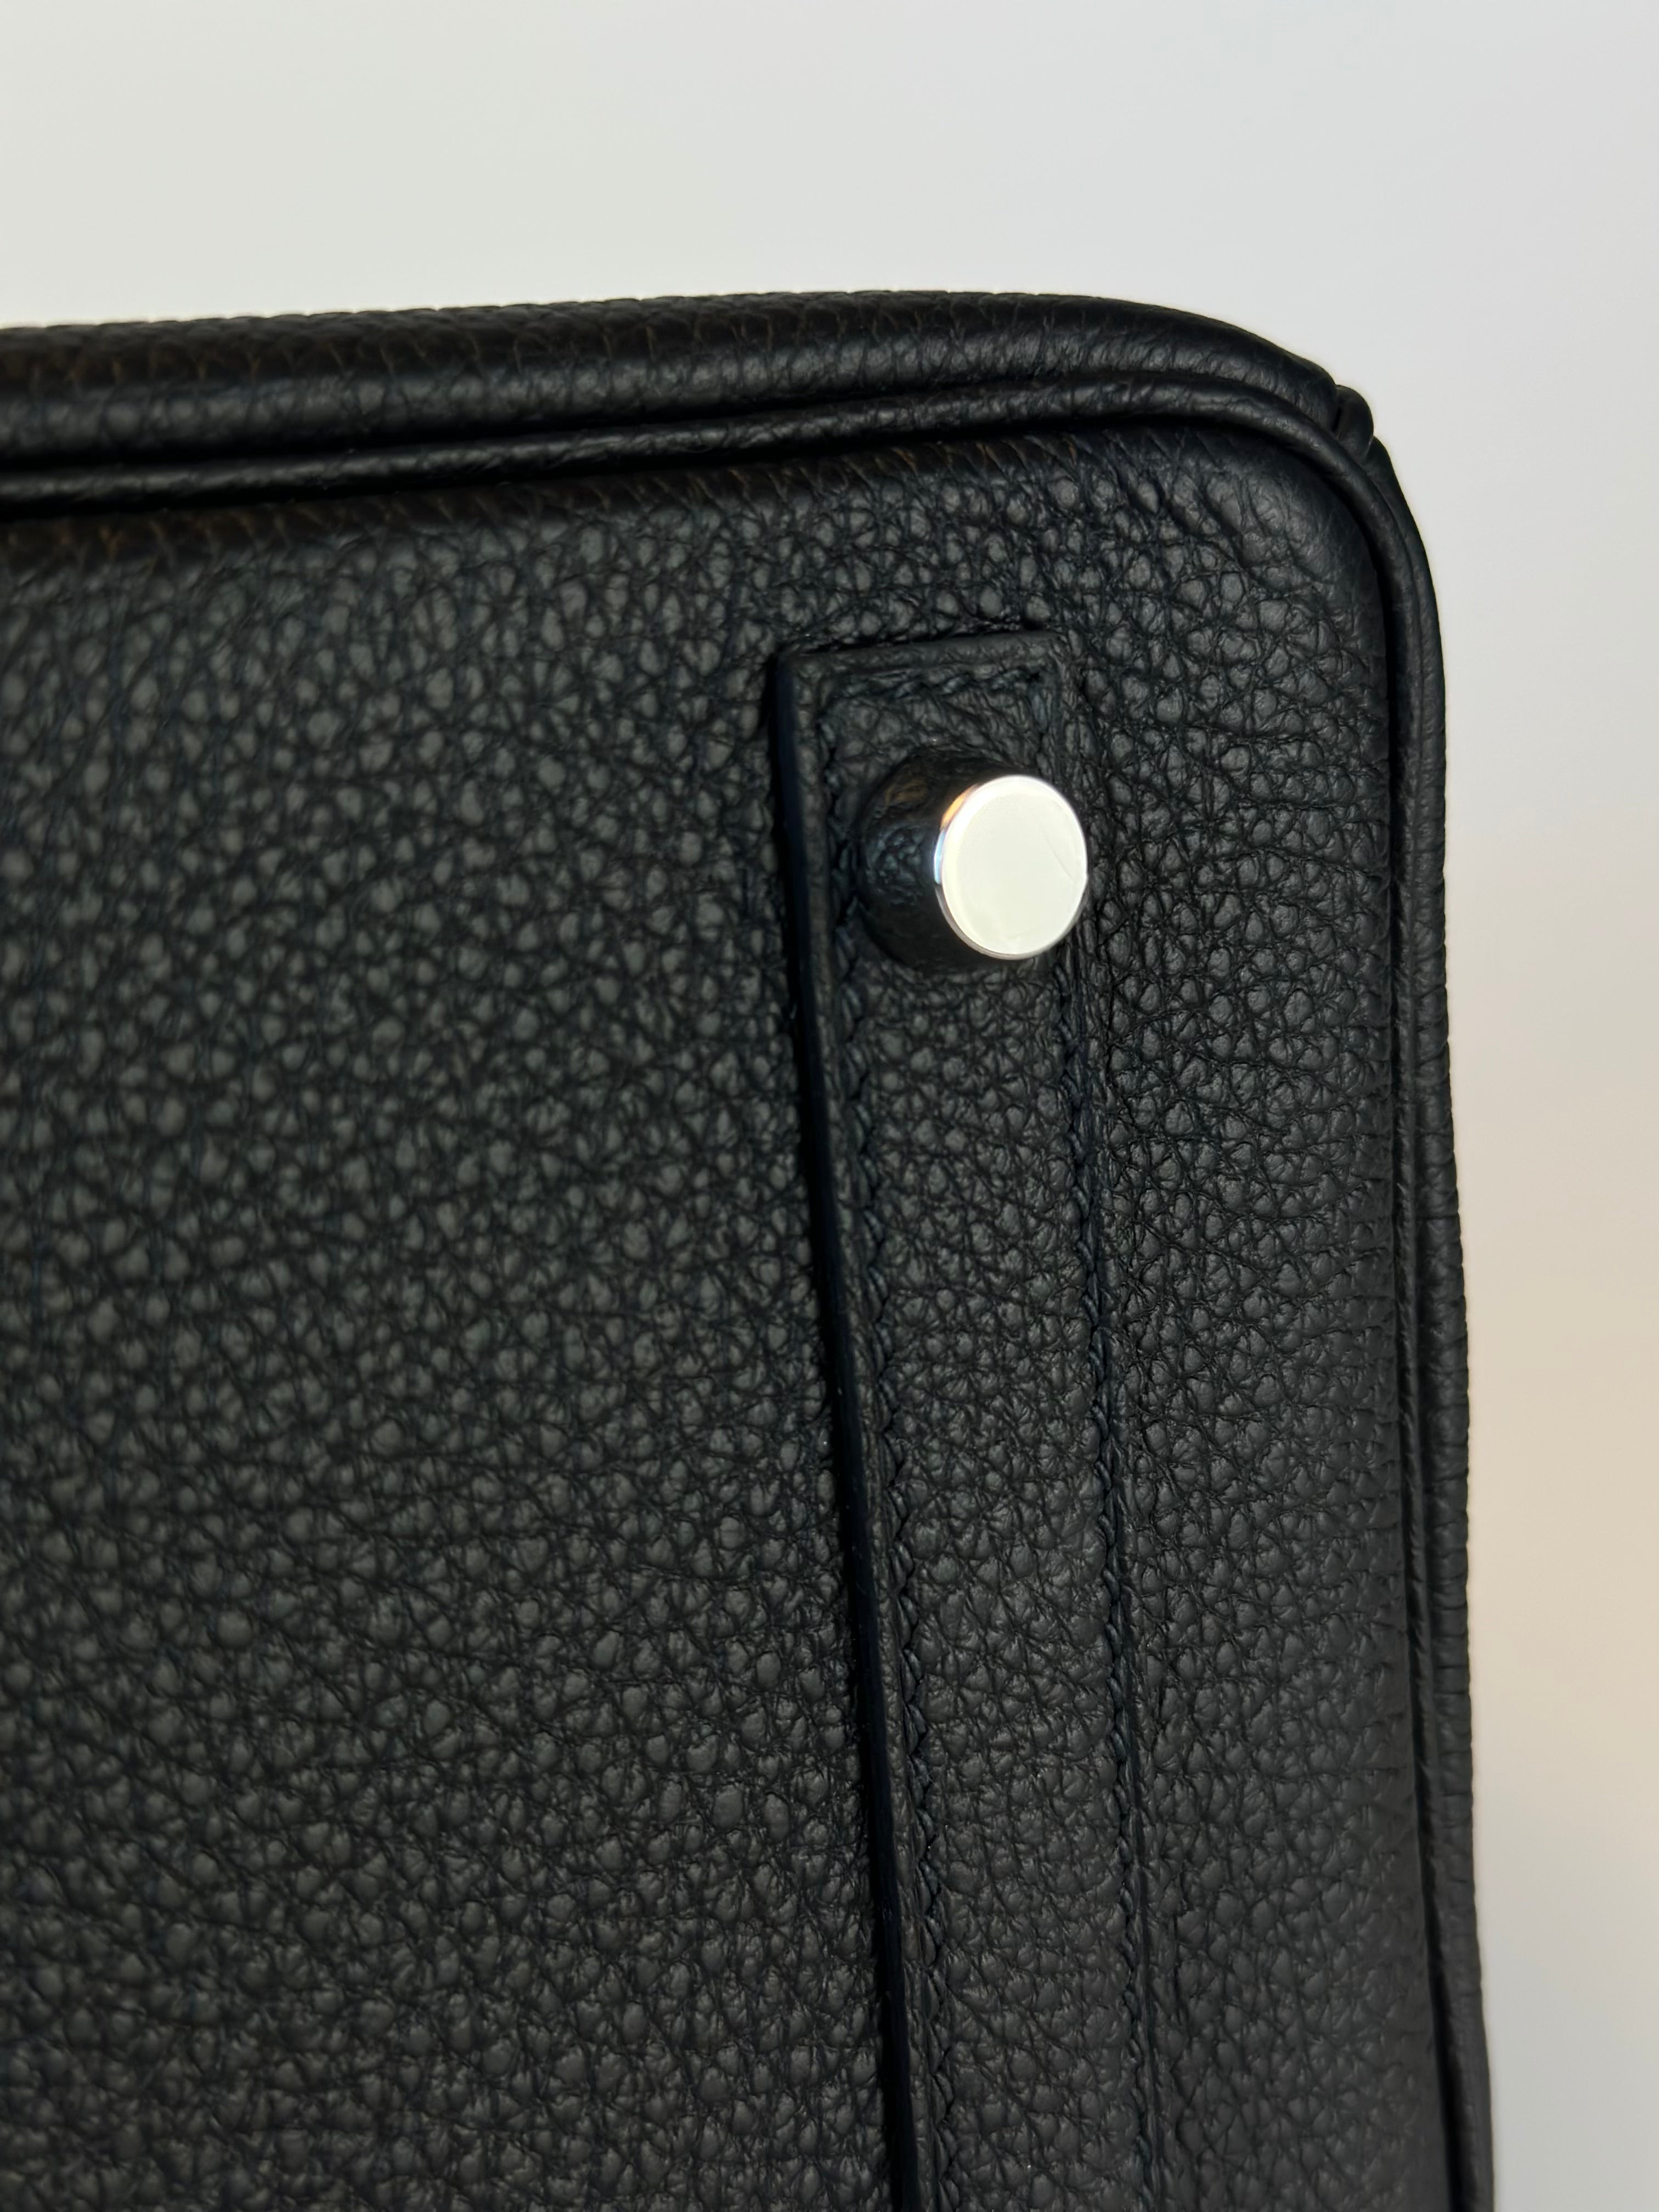 Hermès Birkin 25 Black Togo with Palladium Hardware – ZAK BAGS